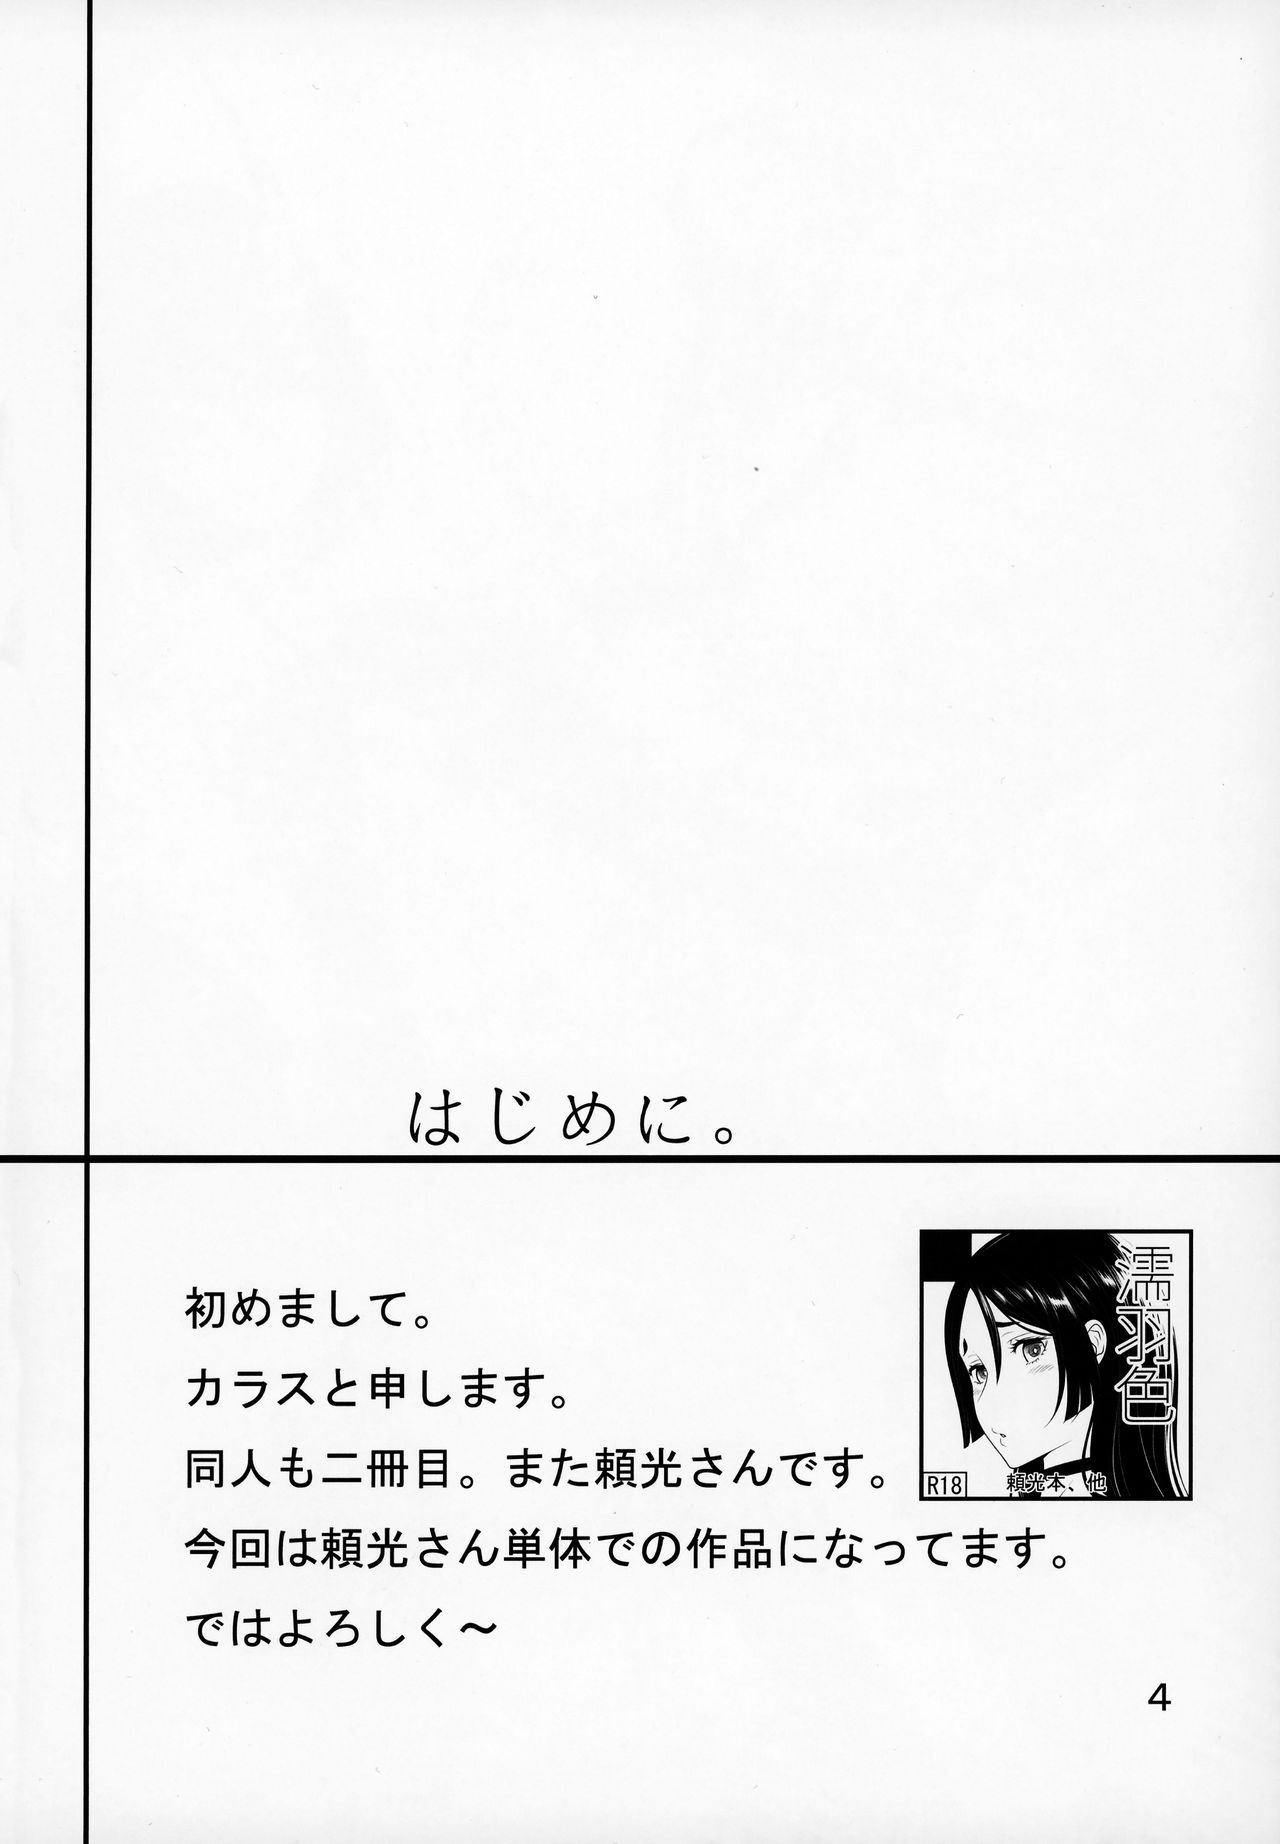 (COMIC1☆13) [濡羽色 (空巣)] Warped Mind (Fate/Grand Order)